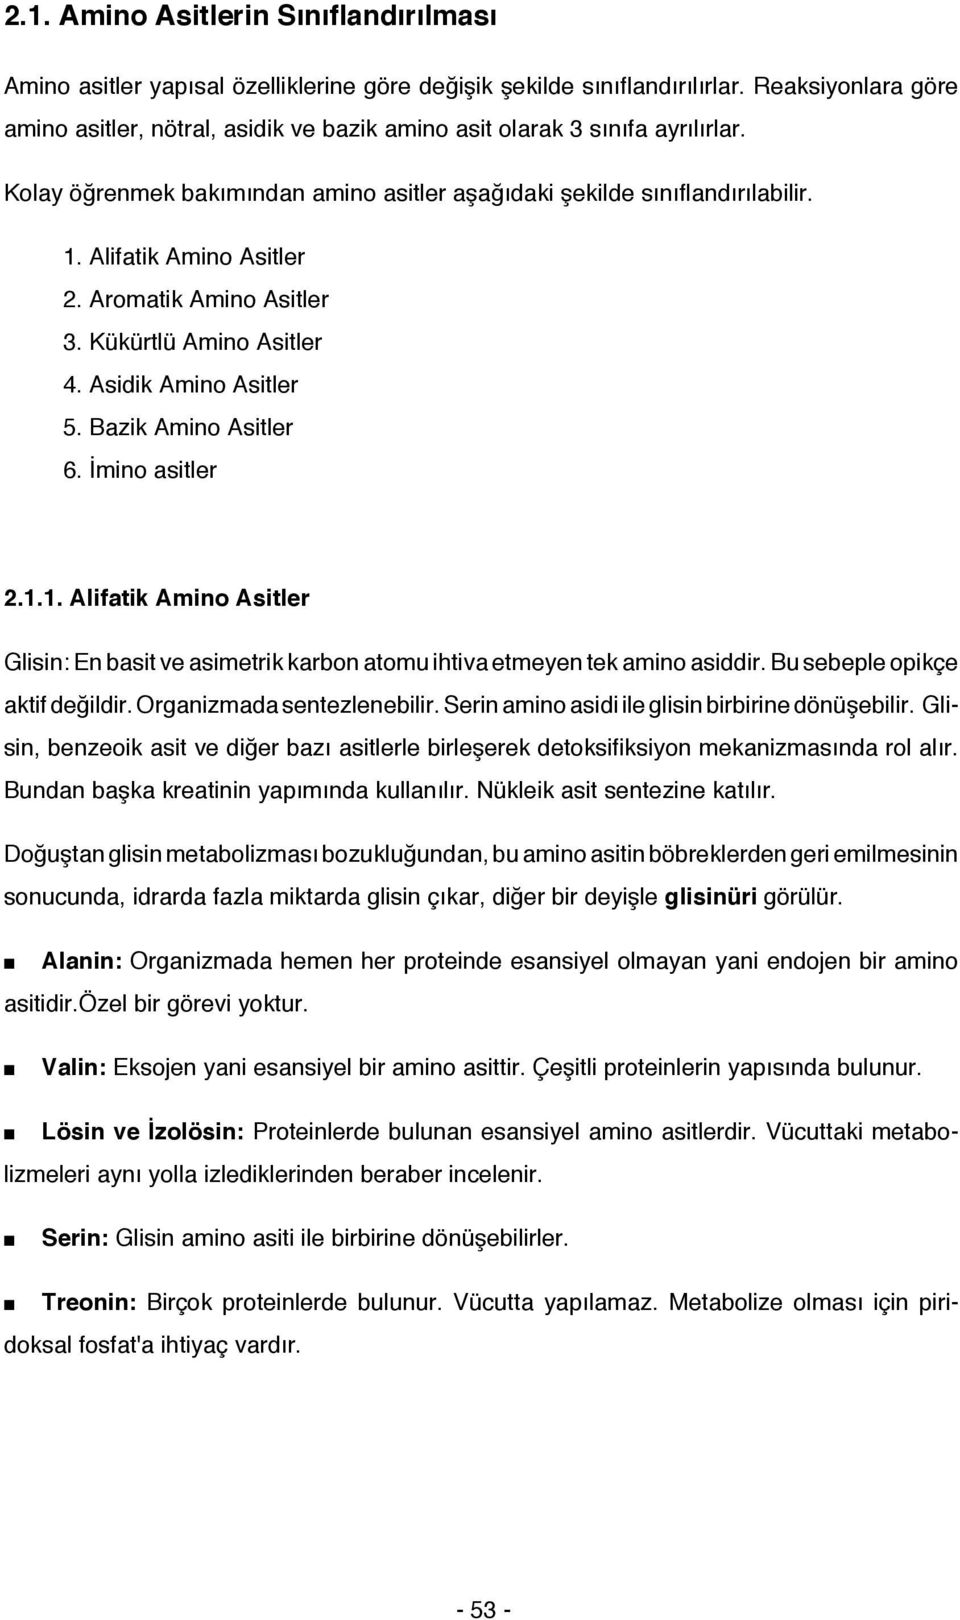 Alifatik Amino Asitler 2. Aromatik Amino Asitler 3. Kükürtlü Amino Asitler 4. Asidik Amino Asitler 5. Bazik Amino Asitler 6. İmino asitler 2.1.